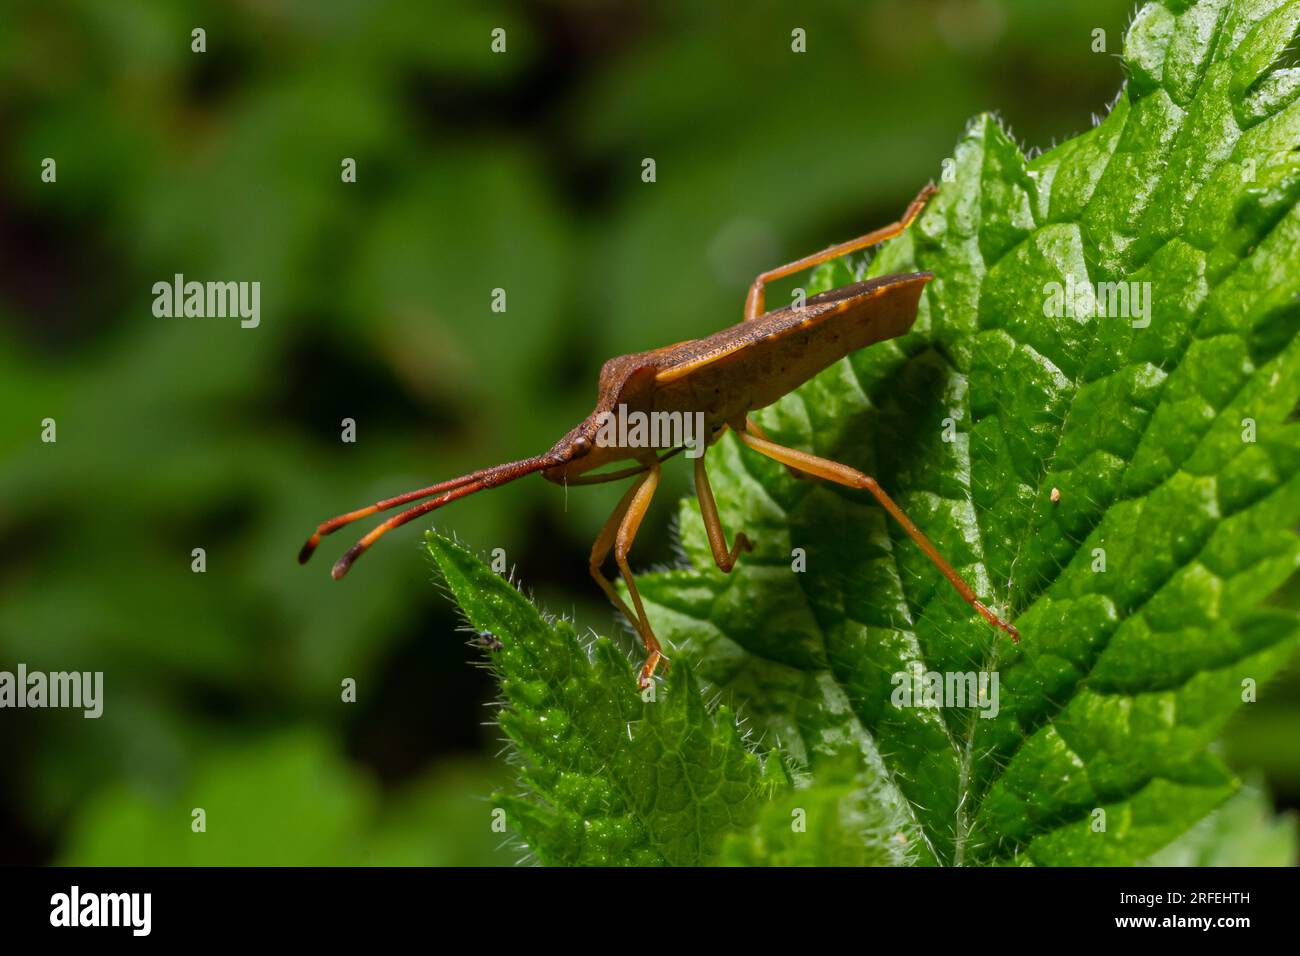 Eine Nahaufnahme eines braunen Waldkäfers oder eines rotbeinigen Schildkäfers auf einem grünen Blatt, Pentatoma rufipes. Stockfoto